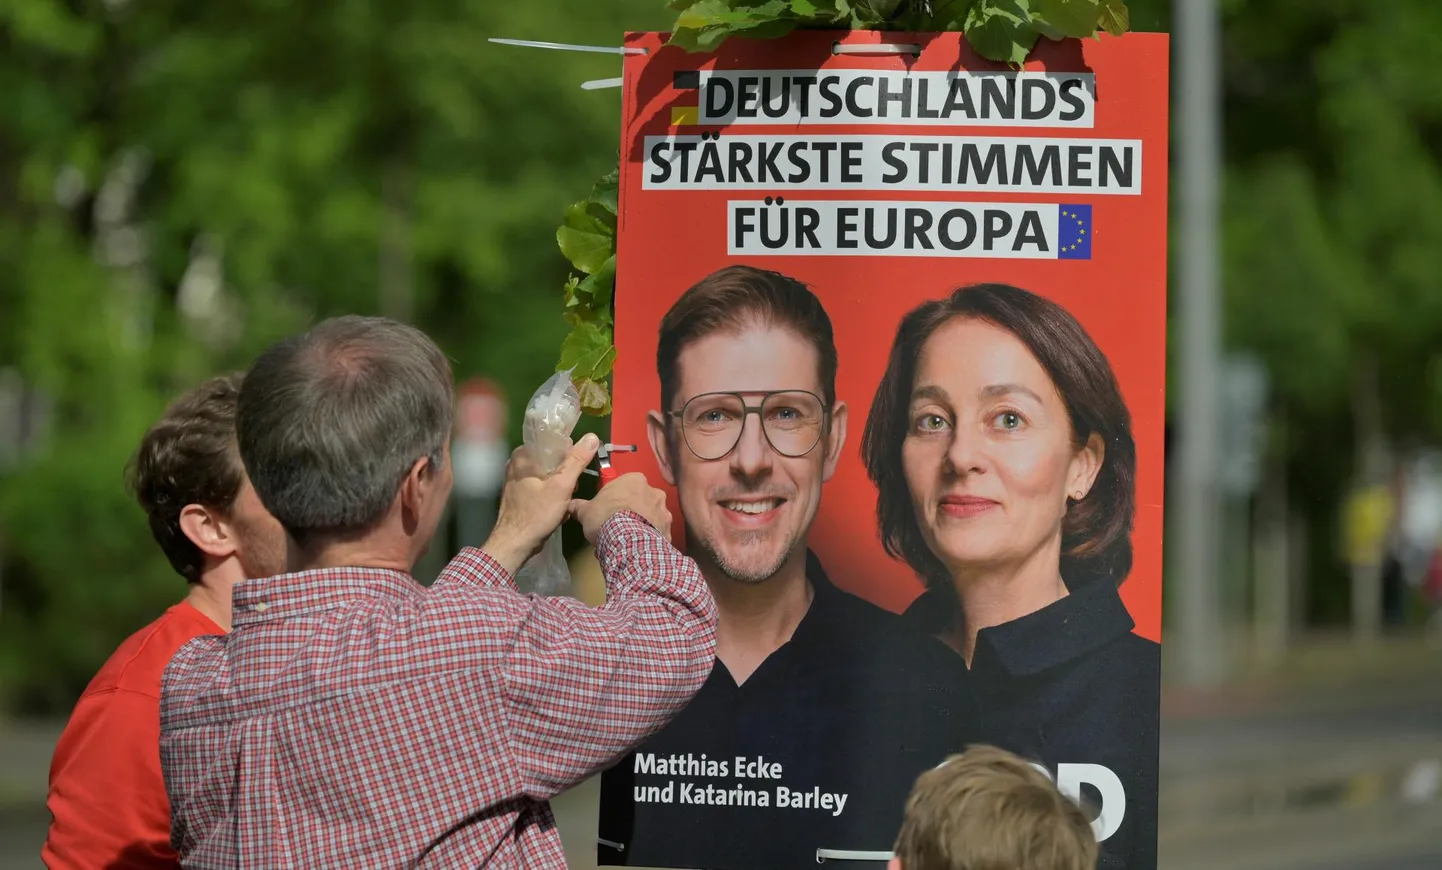 Vabatahtlikud riputasid pühapäeval Dresdenis üles Euroopa Parlamendi valimiste reklaami, millel kujutatud Sotsiaaldemokraatliku Partei (SPD) esinumber Saksimaal Matthias Ecke ja sotside üleriigilise nimekirja esikandidaat Katarina Barley.